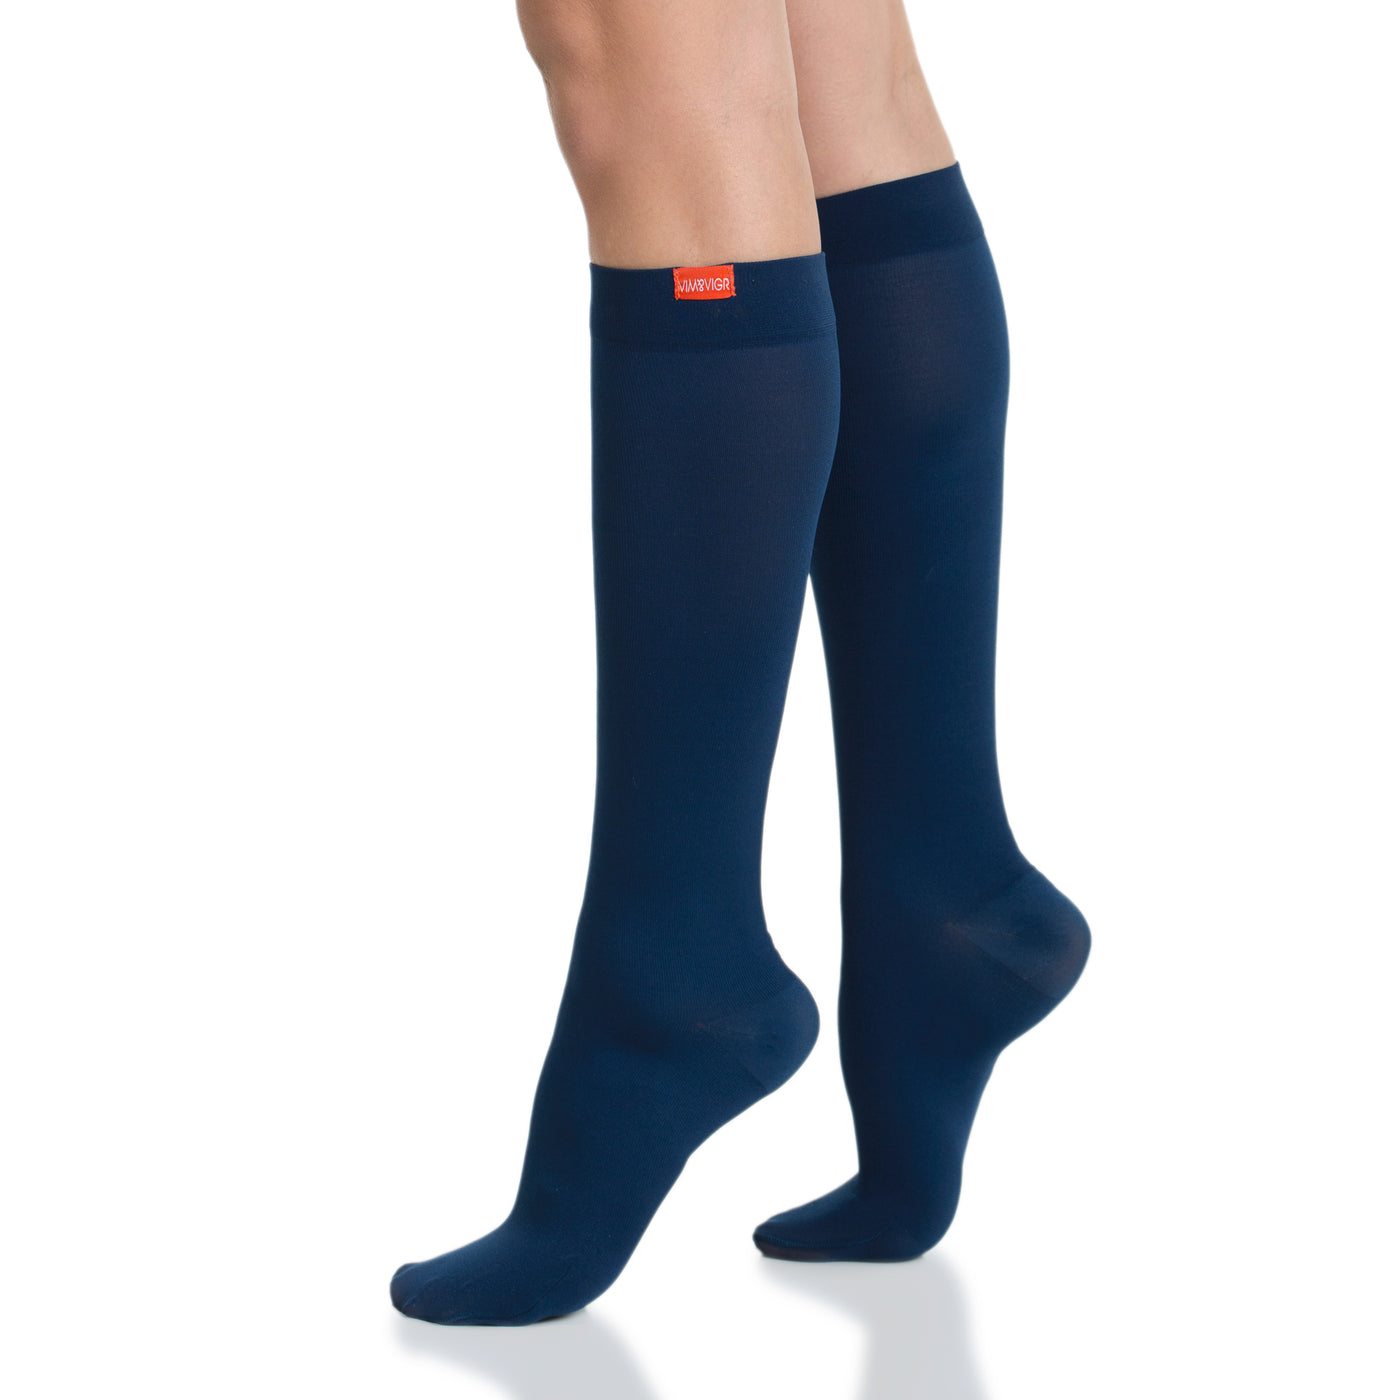 15-20 mmHg: Solid Navy (Moisture-wick Nylon) compression socks for men & women